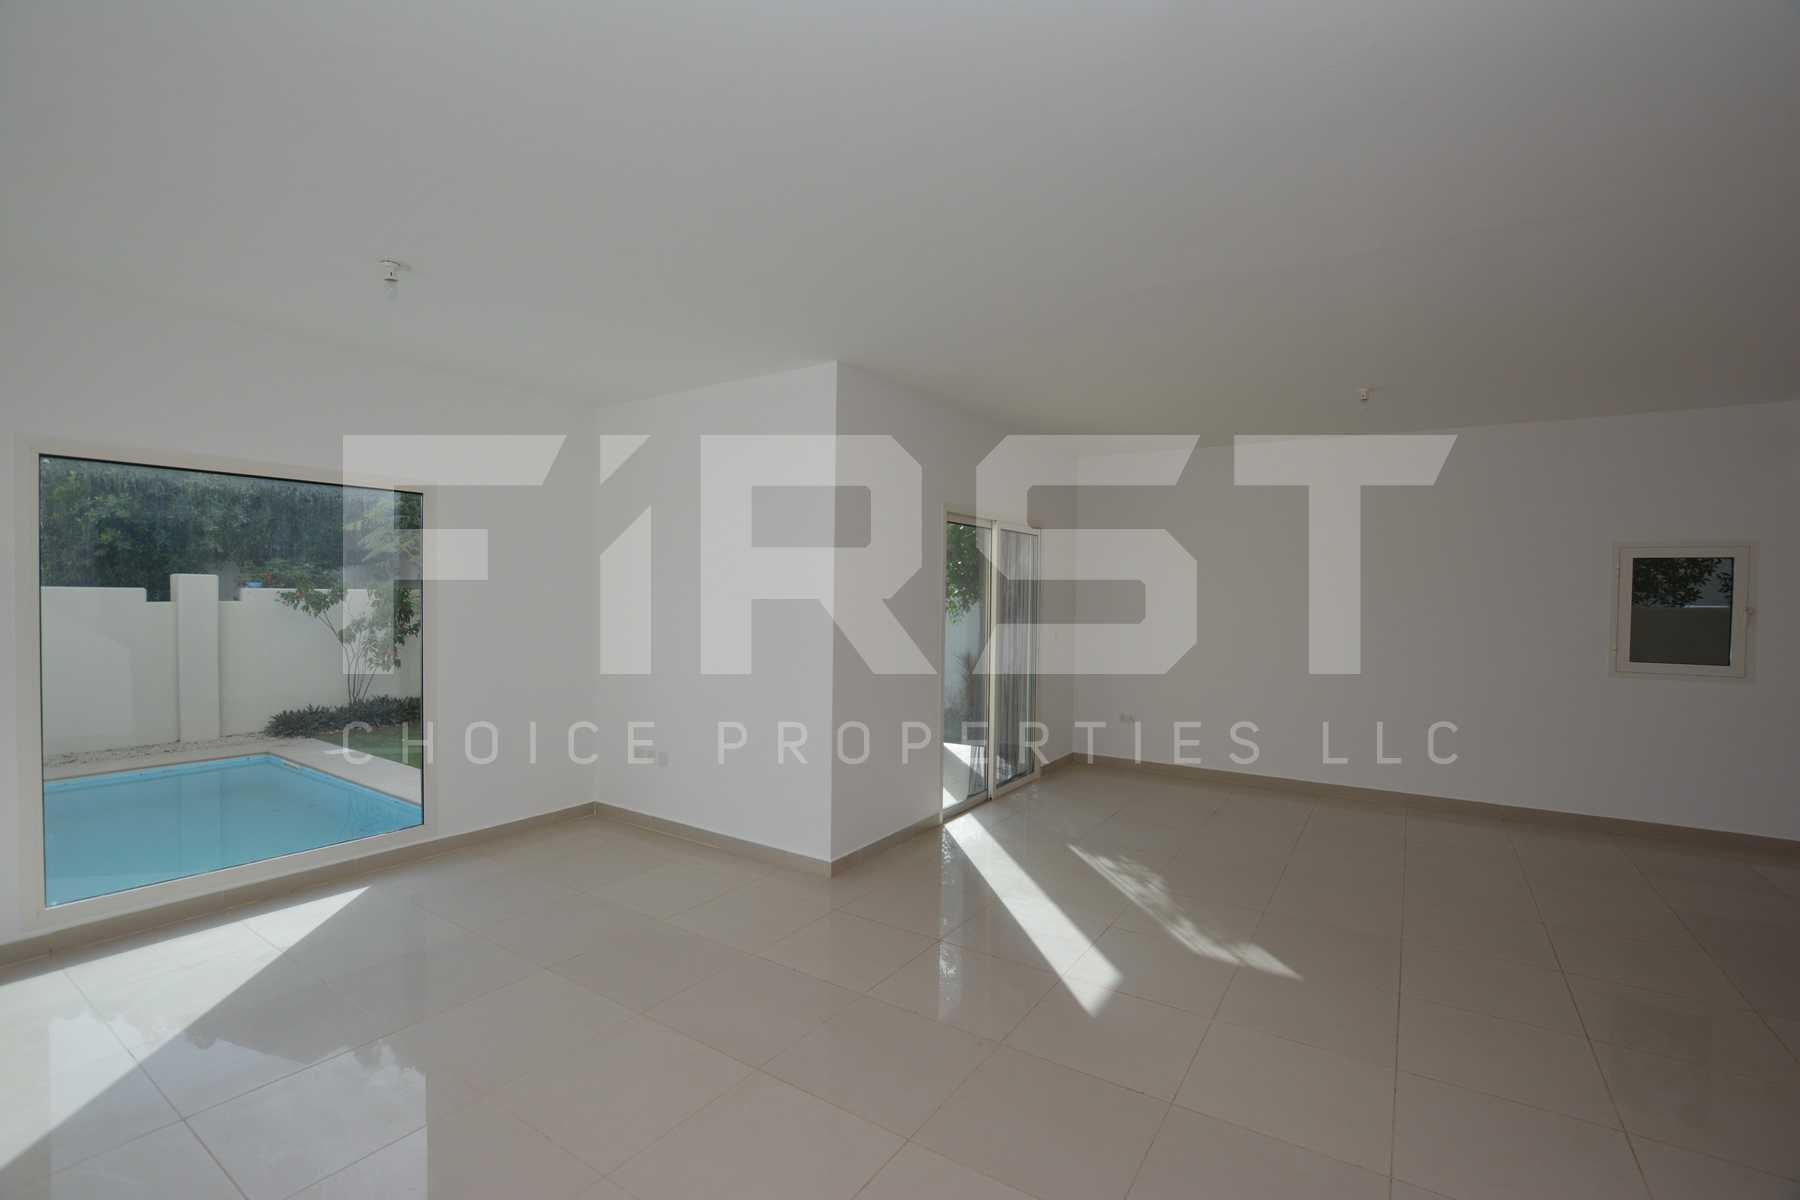 Internal Photo of 5 Bedroom Villa in Al Reef Villas 348.3 sq.m-3749 sq.ft-Abu Dhabi -UAE (11).jpg